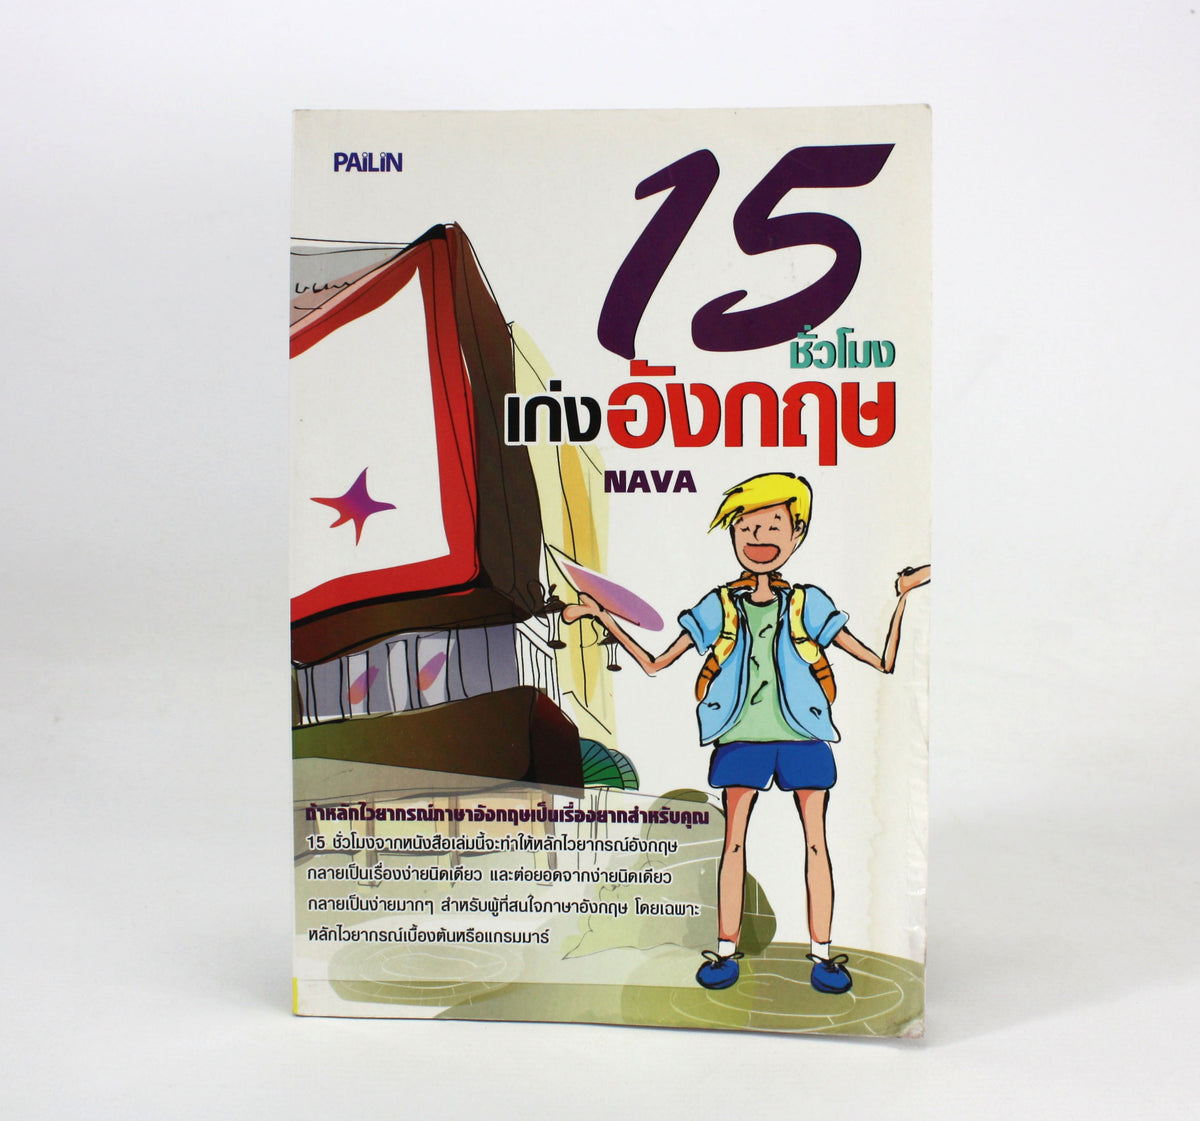 Thai language book